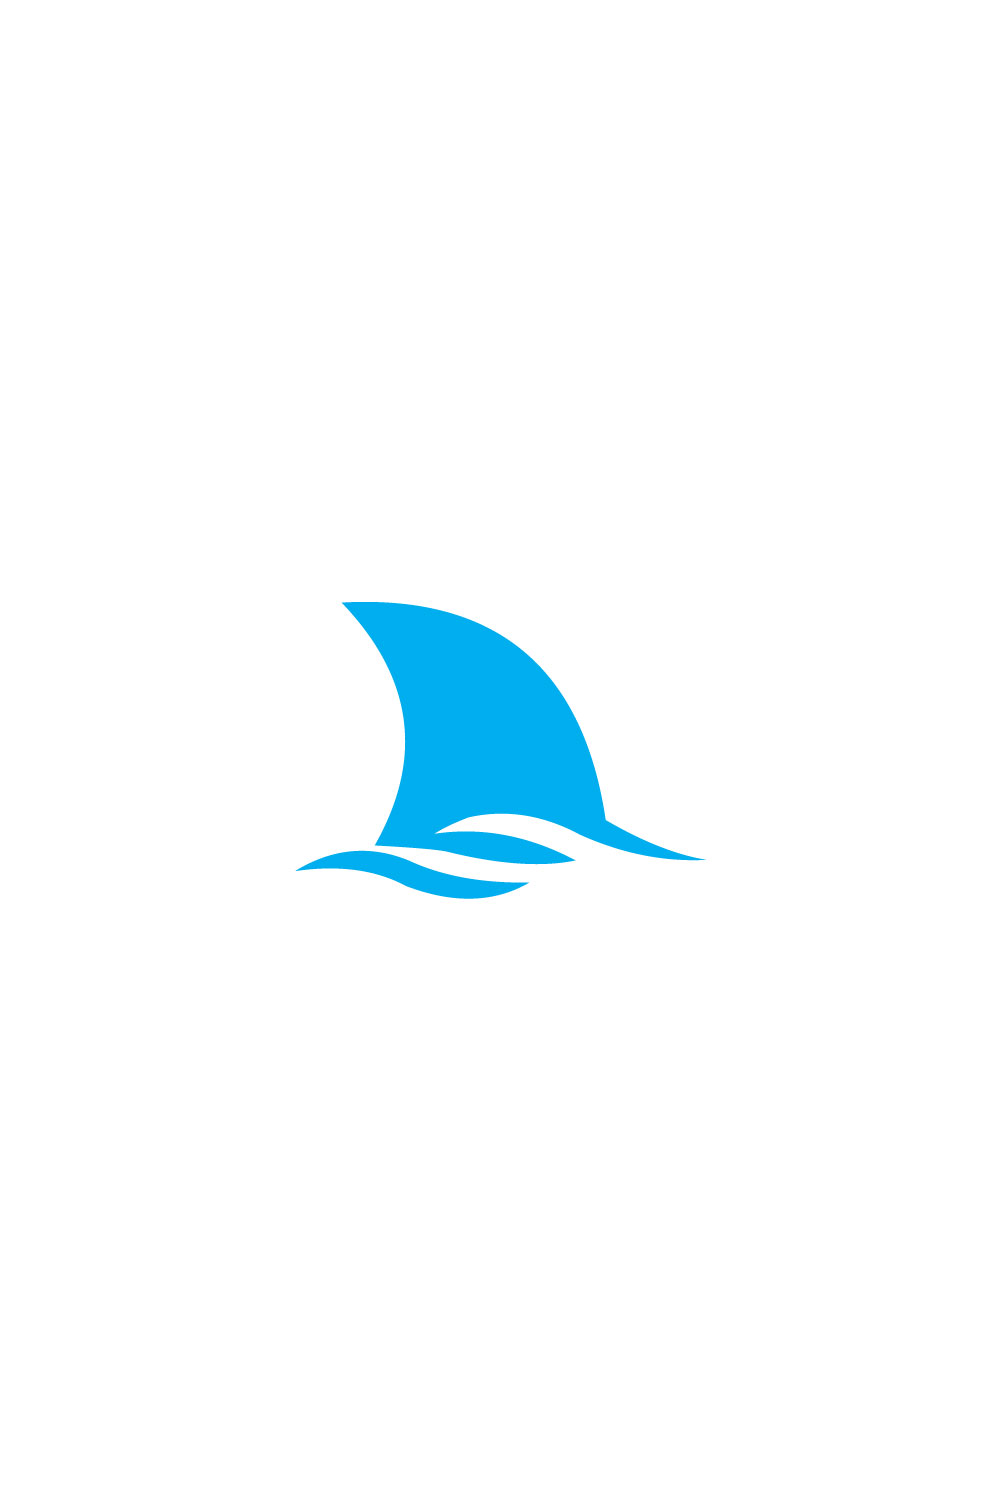 Shark Logo Vector pinterest image.